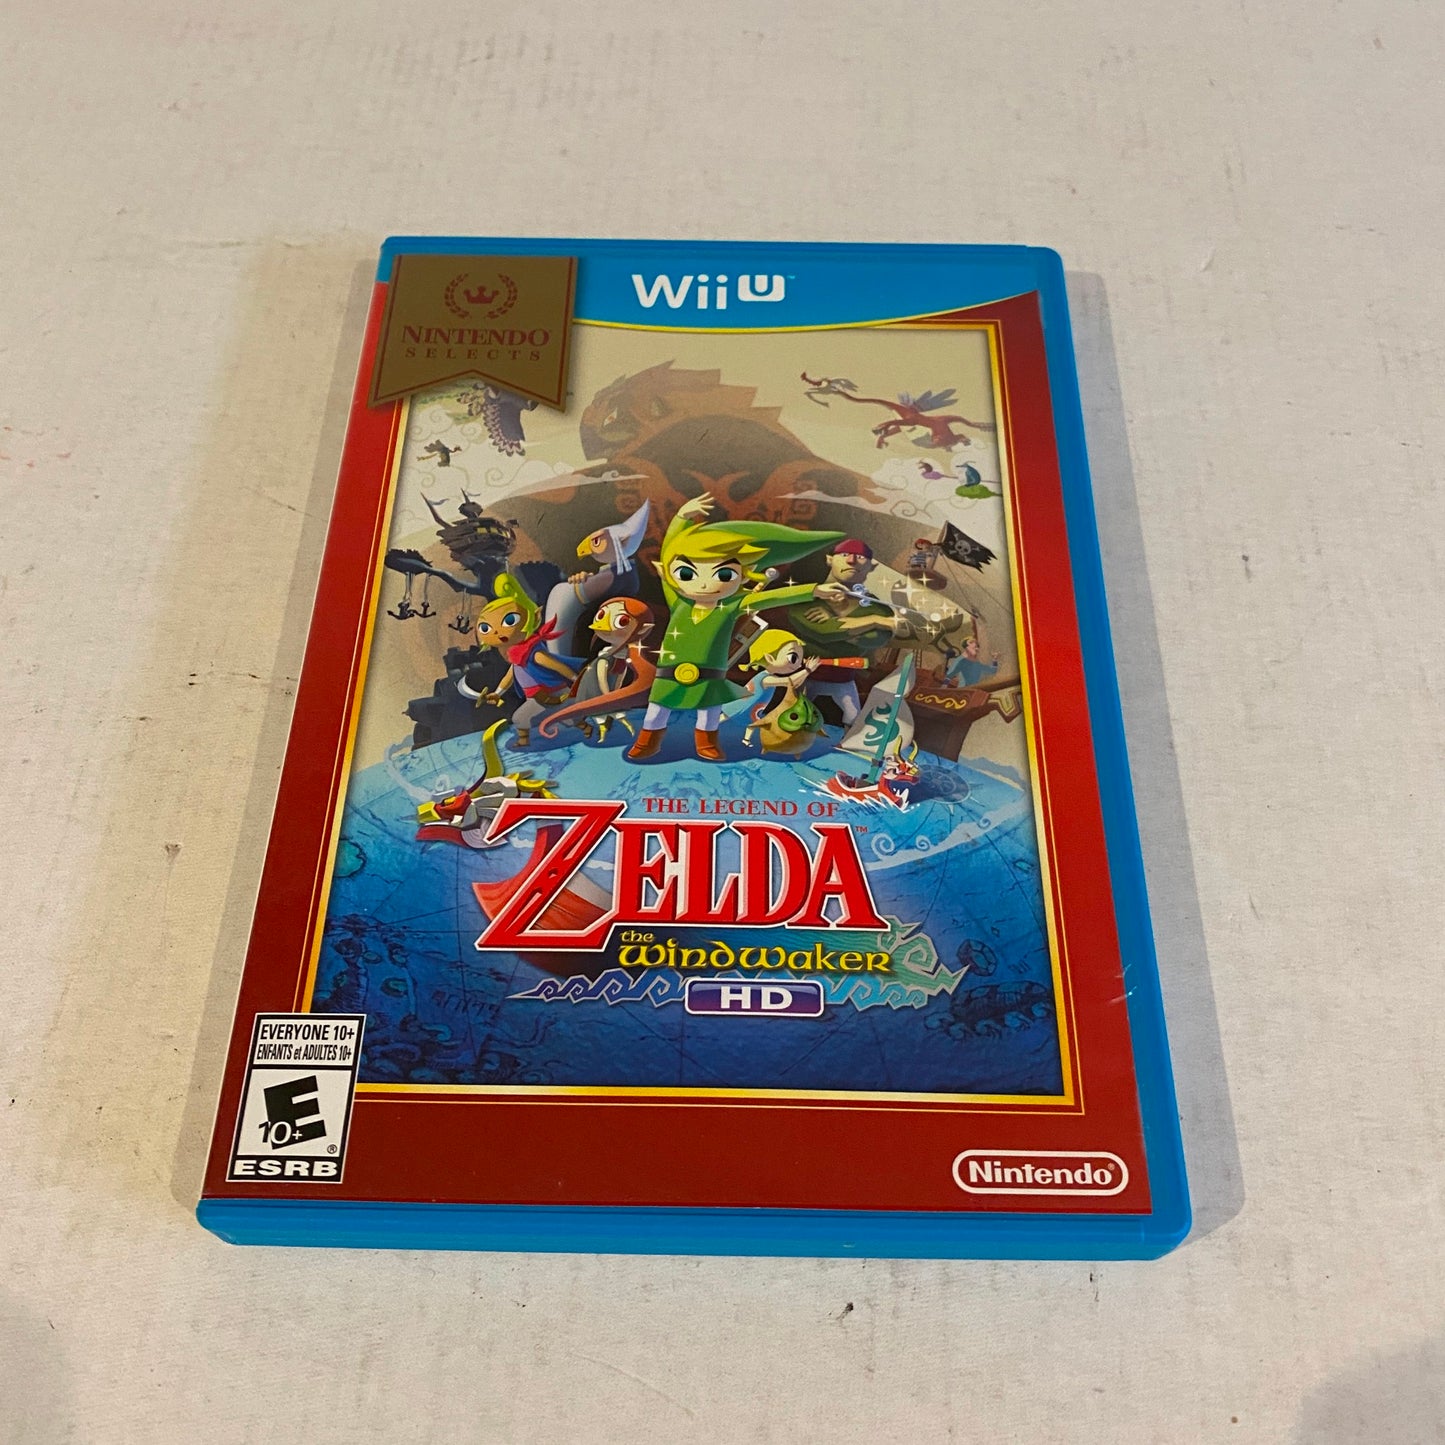 The Legend of Zelda The WindWaker for Nintendo WiiU